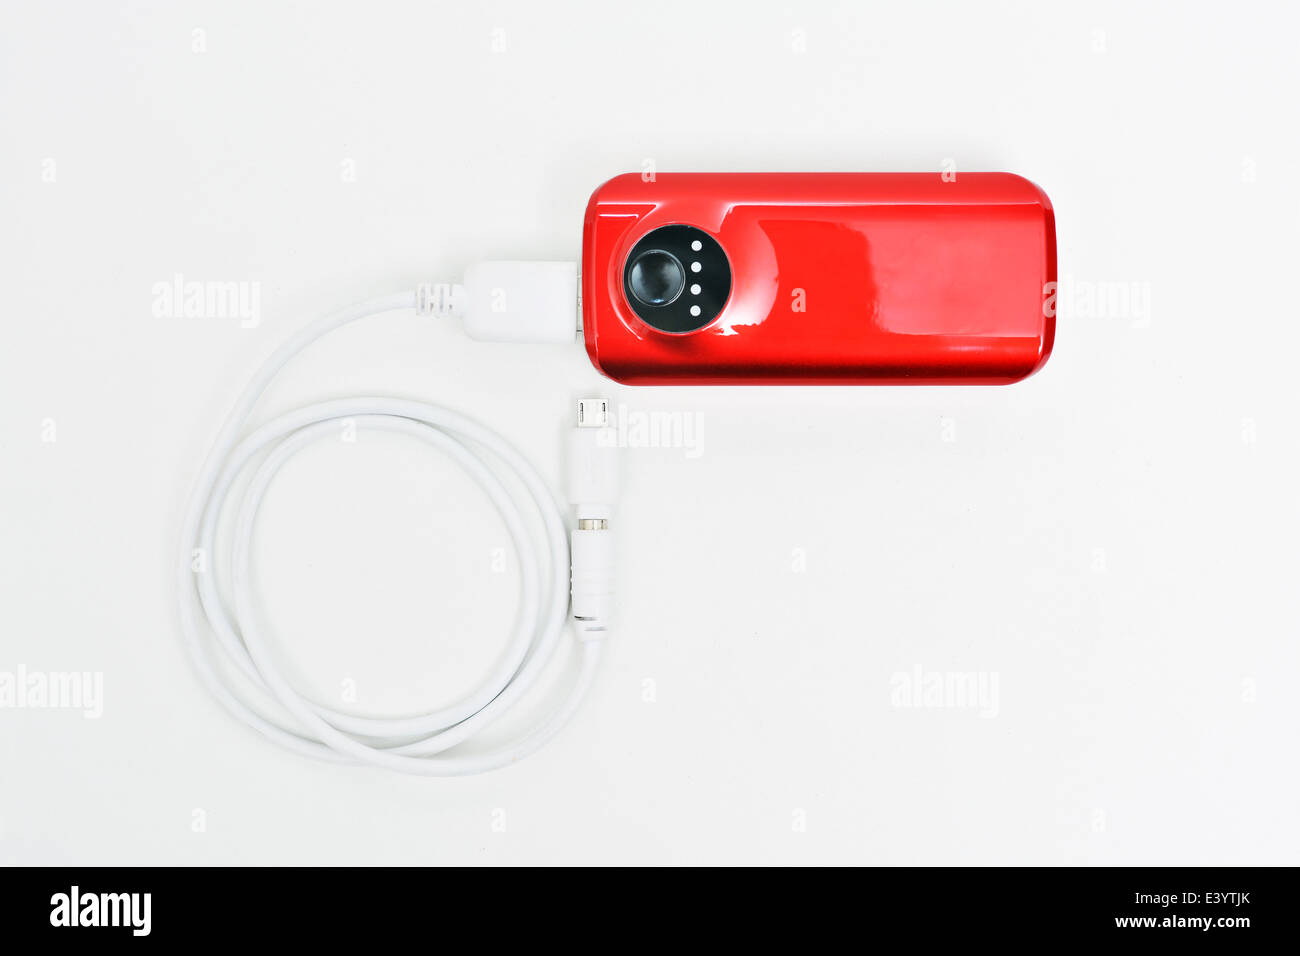 Banca di potenza, di un dispositivo di piccole dimensioni che dispongono di energia elettrica per la ricarica di molti tipi di smartphone tramite USB Foto Stock